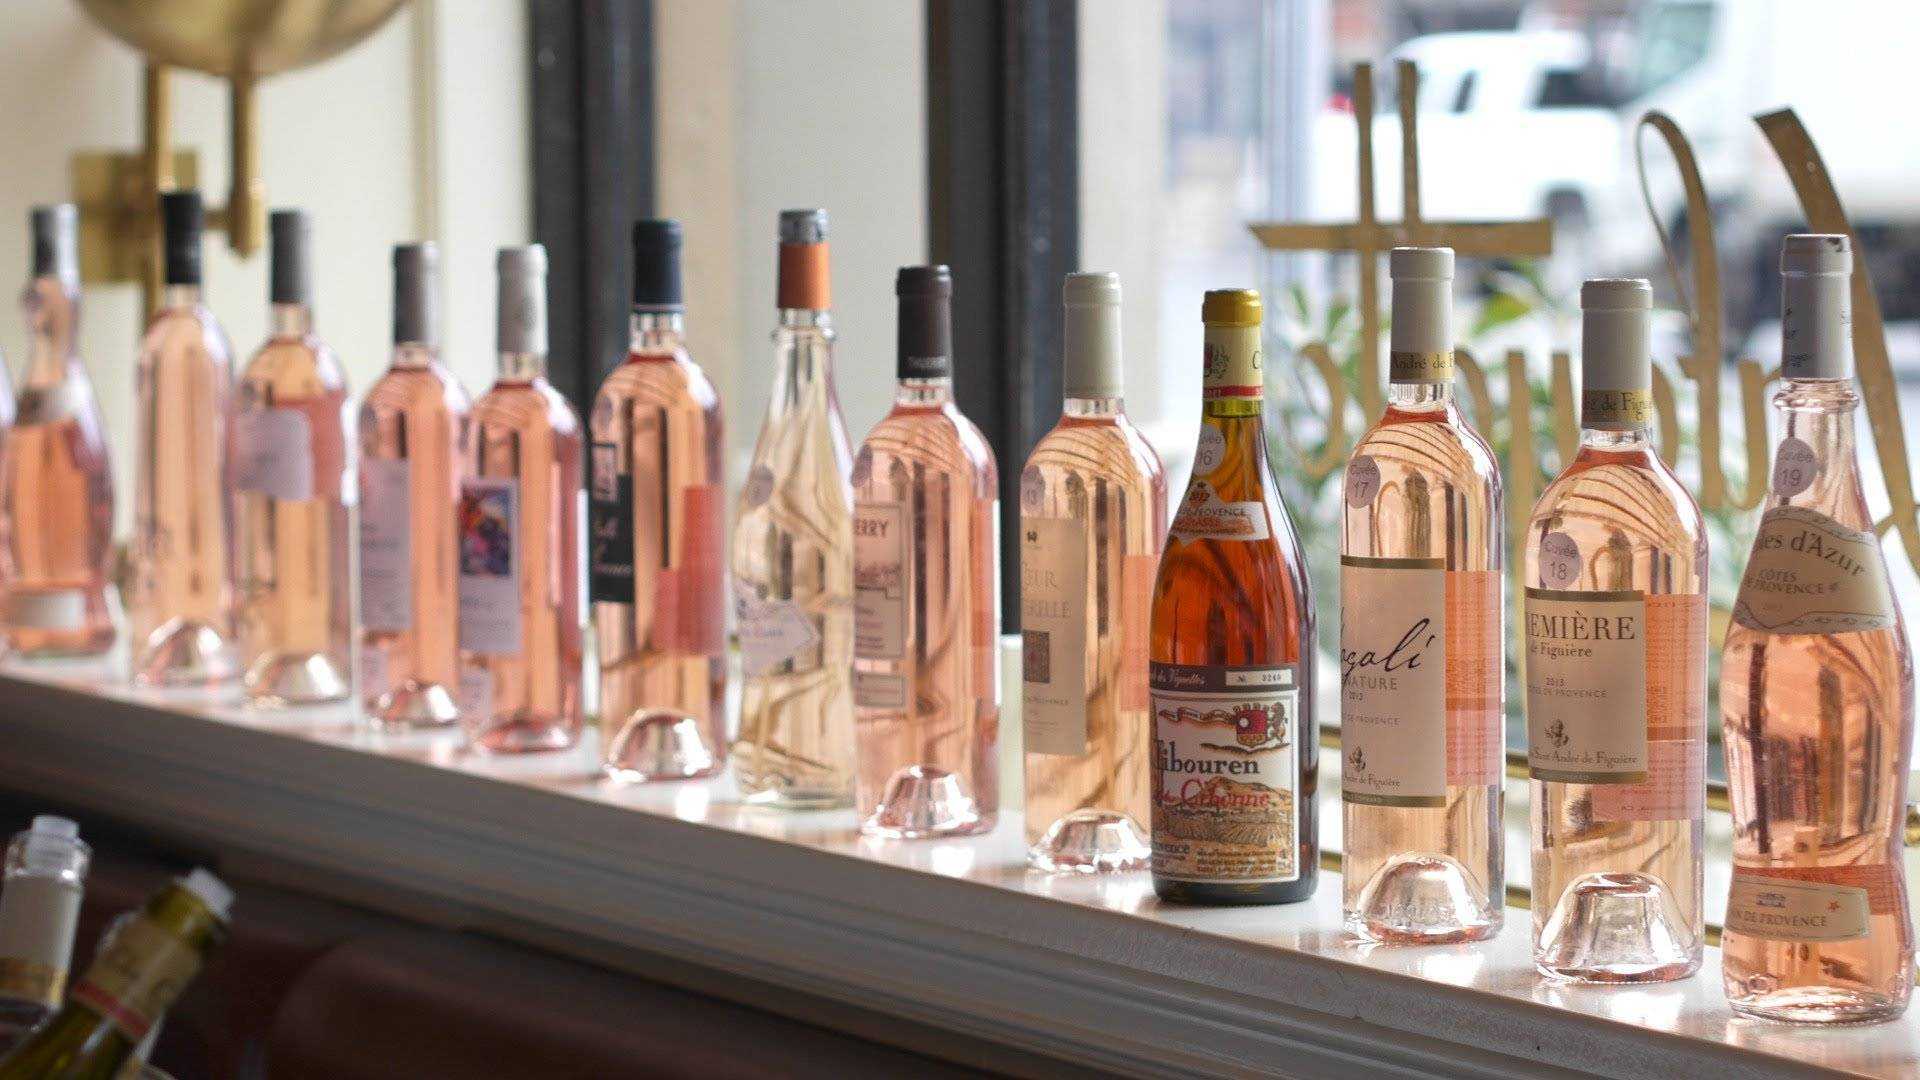 Розовые вина прованса: обзор, отзывы, характеристики, производство